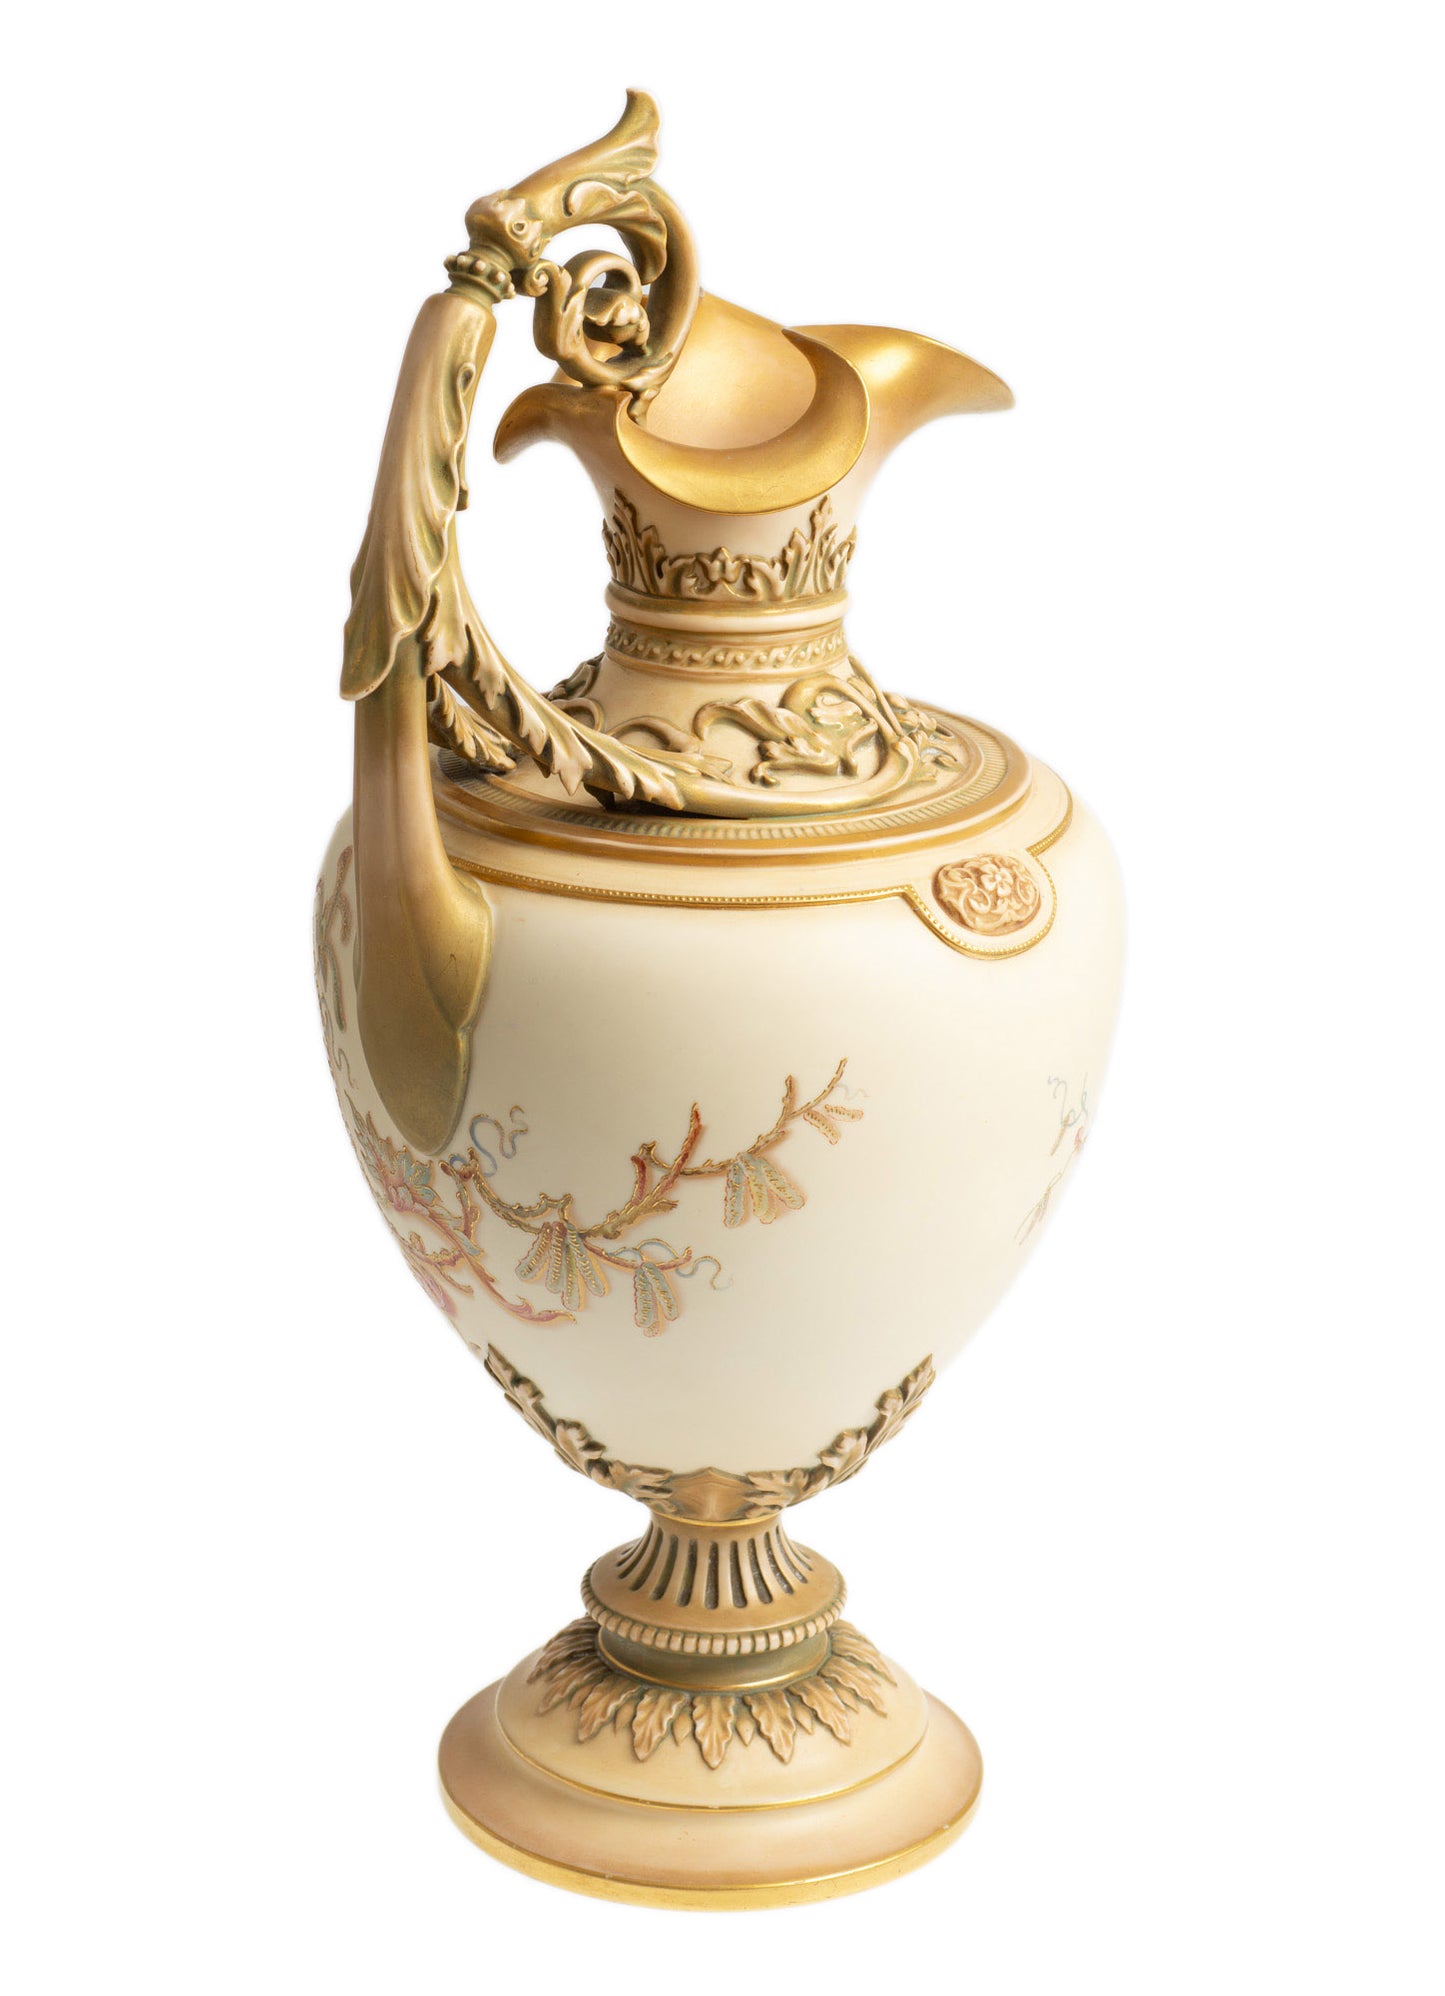 Exceptional Royal Worcester Ivory Glaze & Antique Gold Ewer Model 1309 (Code 2687)